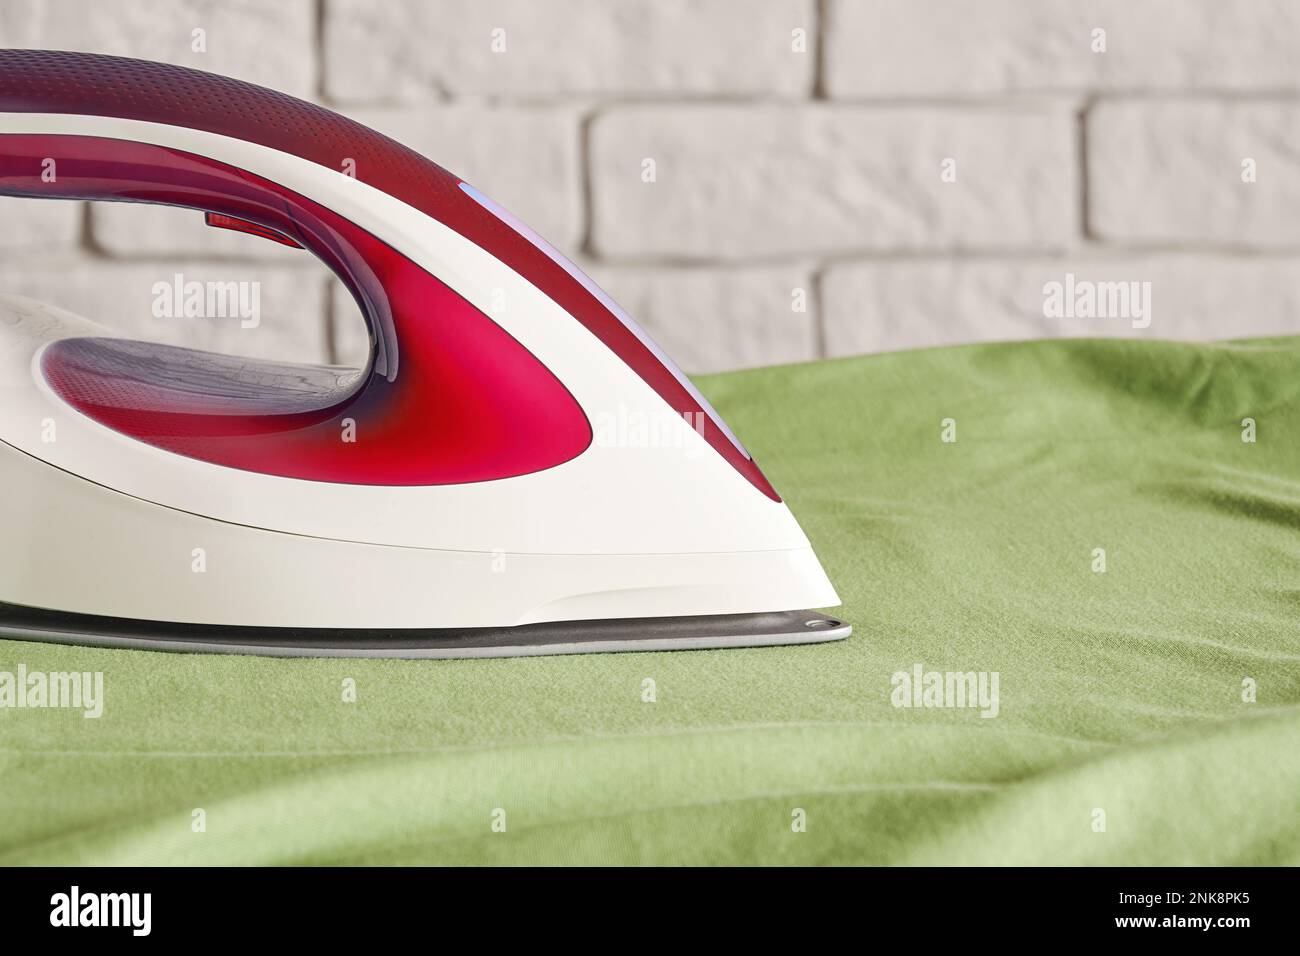 Modernes rotes Bügeleisen auf dem Bügelbrett, grünes Hemd - Nahaufnahme. Haushaltsgeräte. Platz für Text kopieren Stockfoto